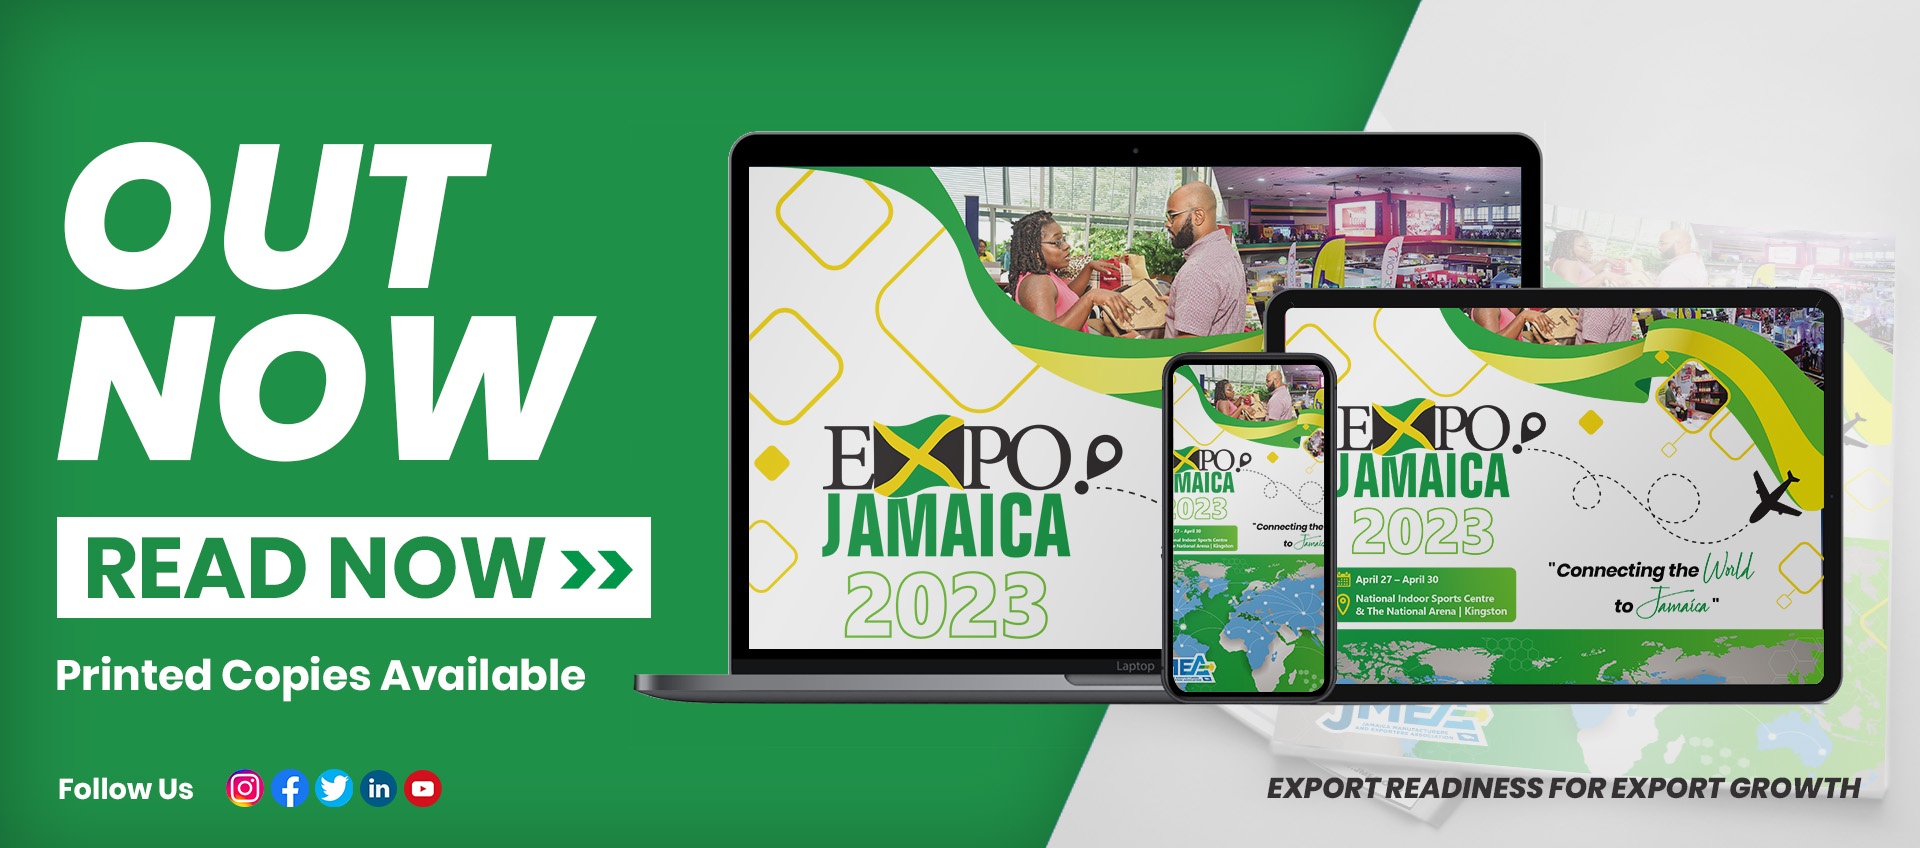 Expo Jamaica 2023 Magazine